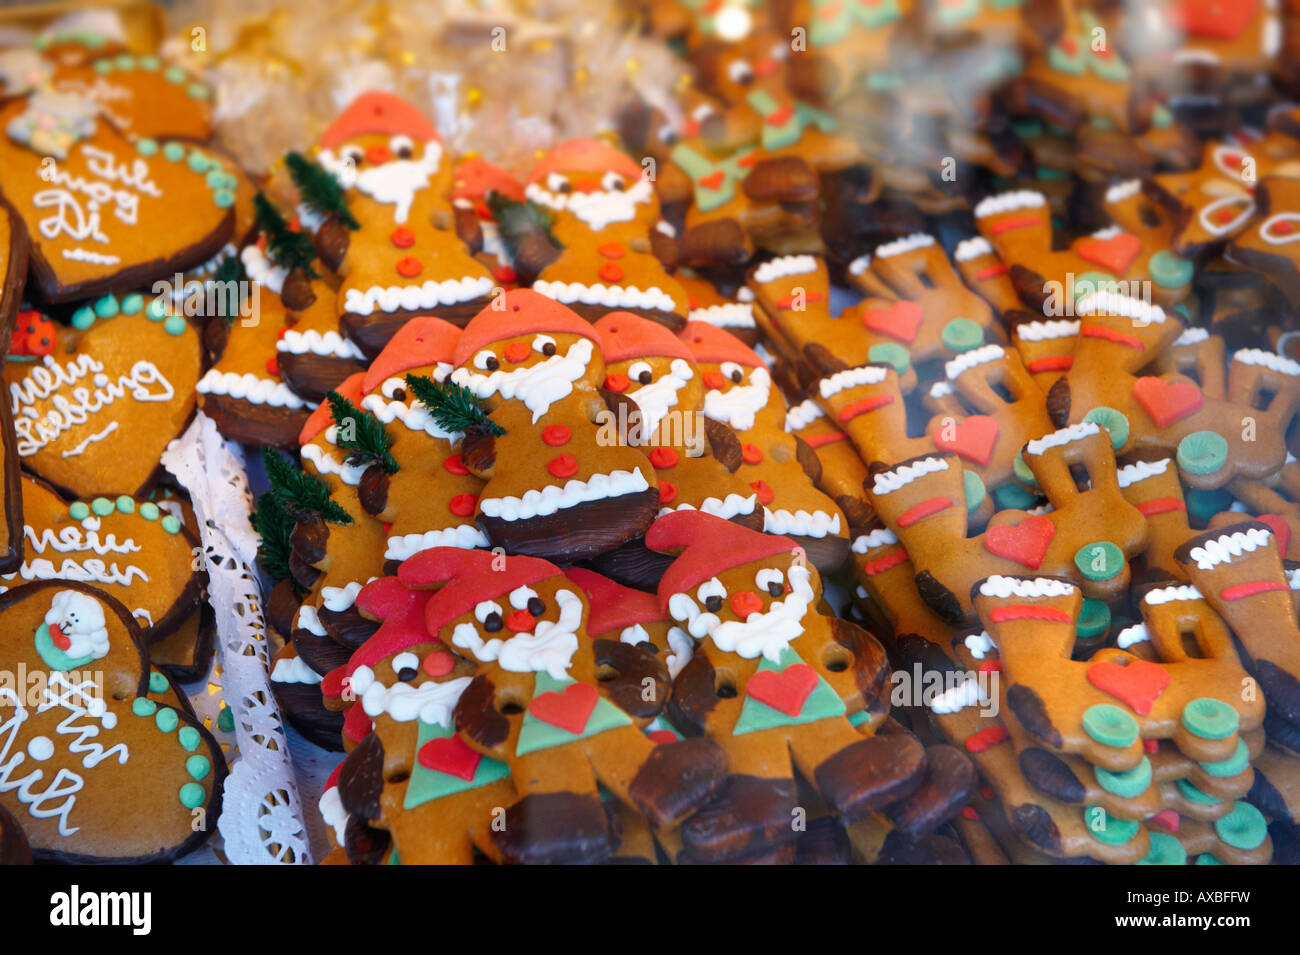 Los puestos de mercado de navidad con alimentos tradicionales galletas, Nuremberg, Alemania Foto de stock